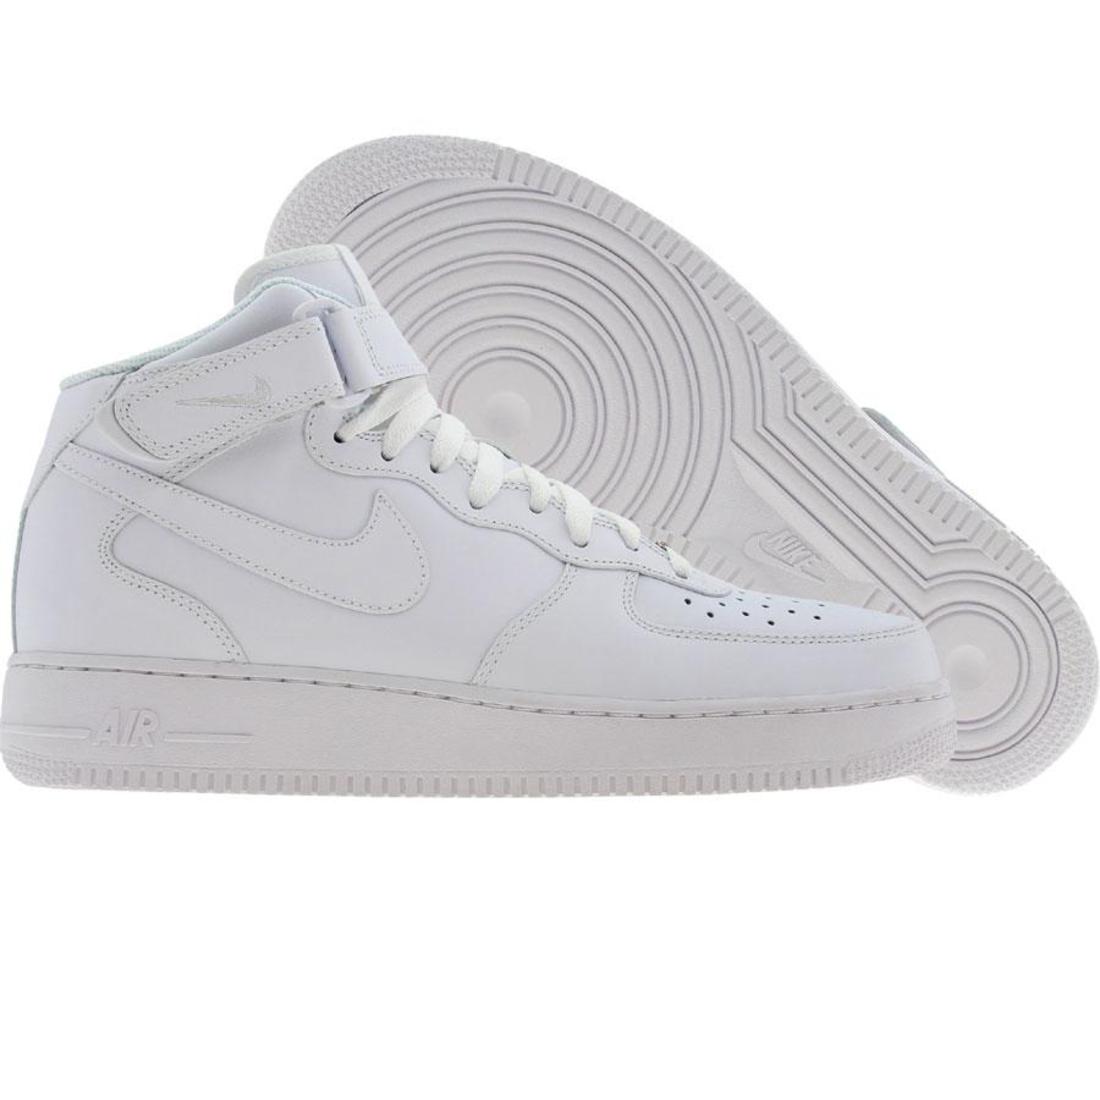 315123-111 Nike Men Air Force 1 07 Mid (white / white) | eBay